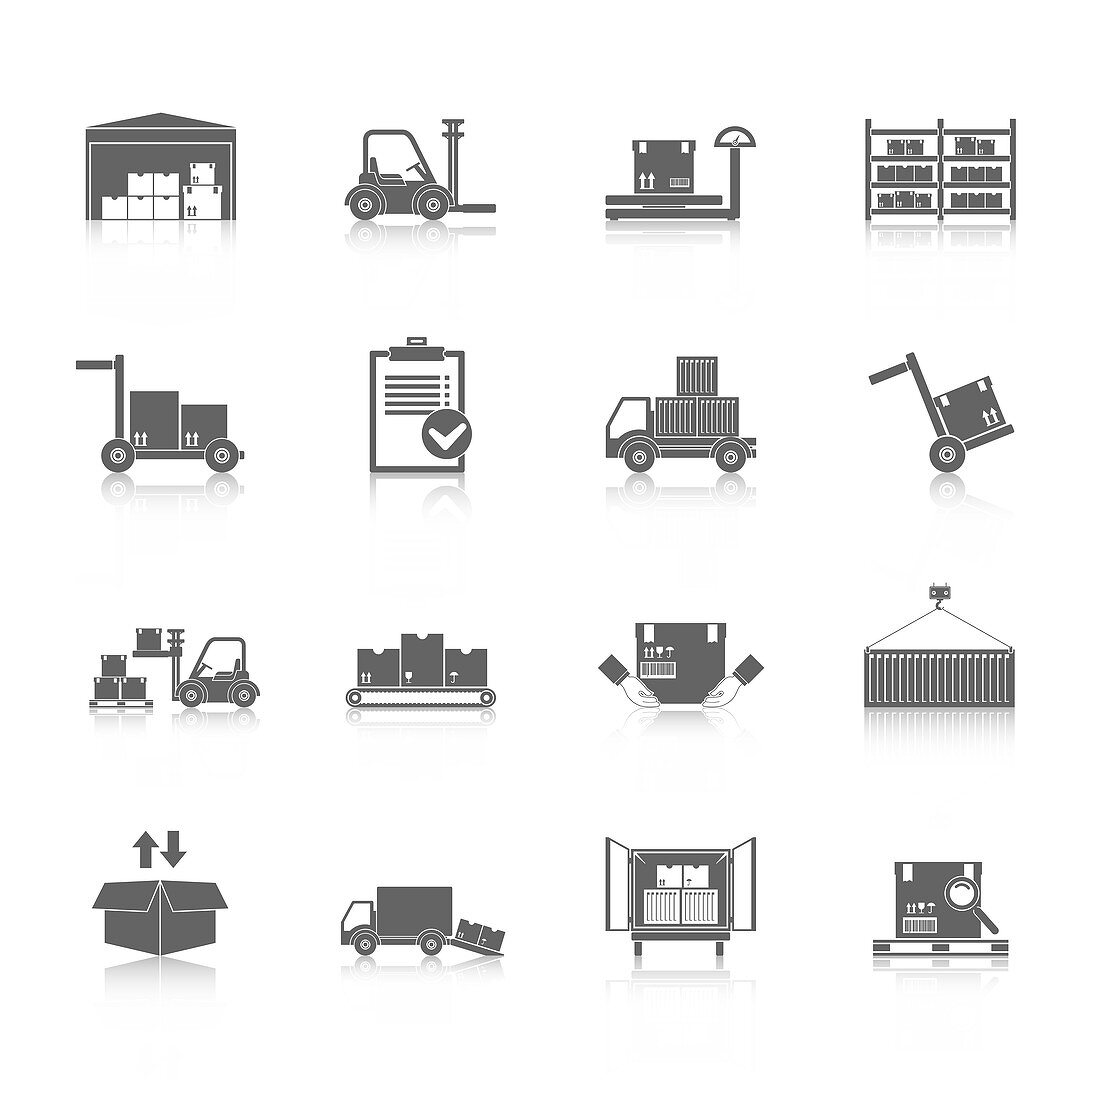 Warehouse icons, illustration